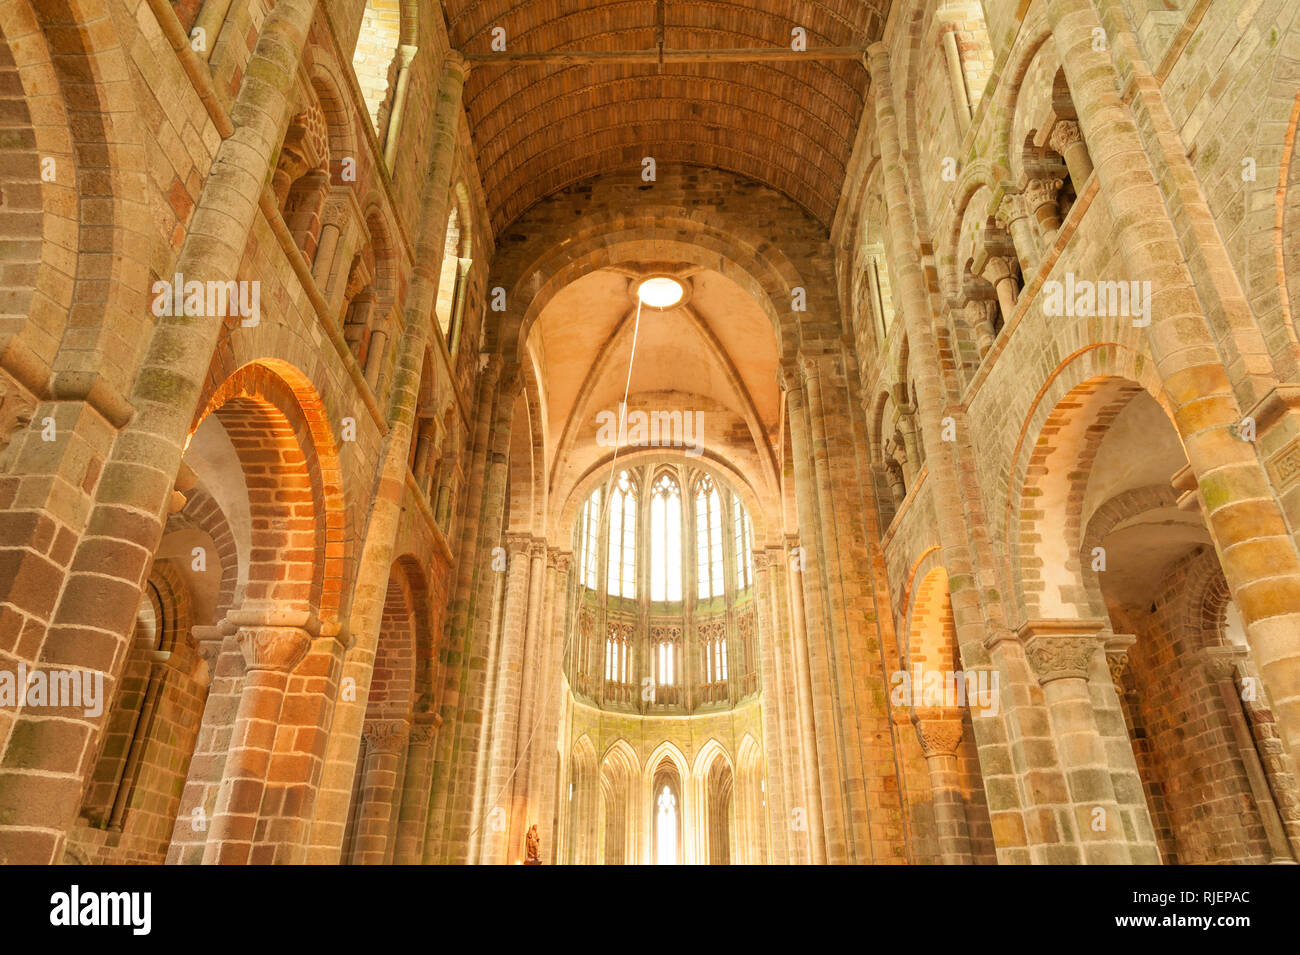 Choeur gothique du célèbre Mont Saint Michel church-abbaye, UNESCO World Heritage site, Normandie, France Banque D'Images